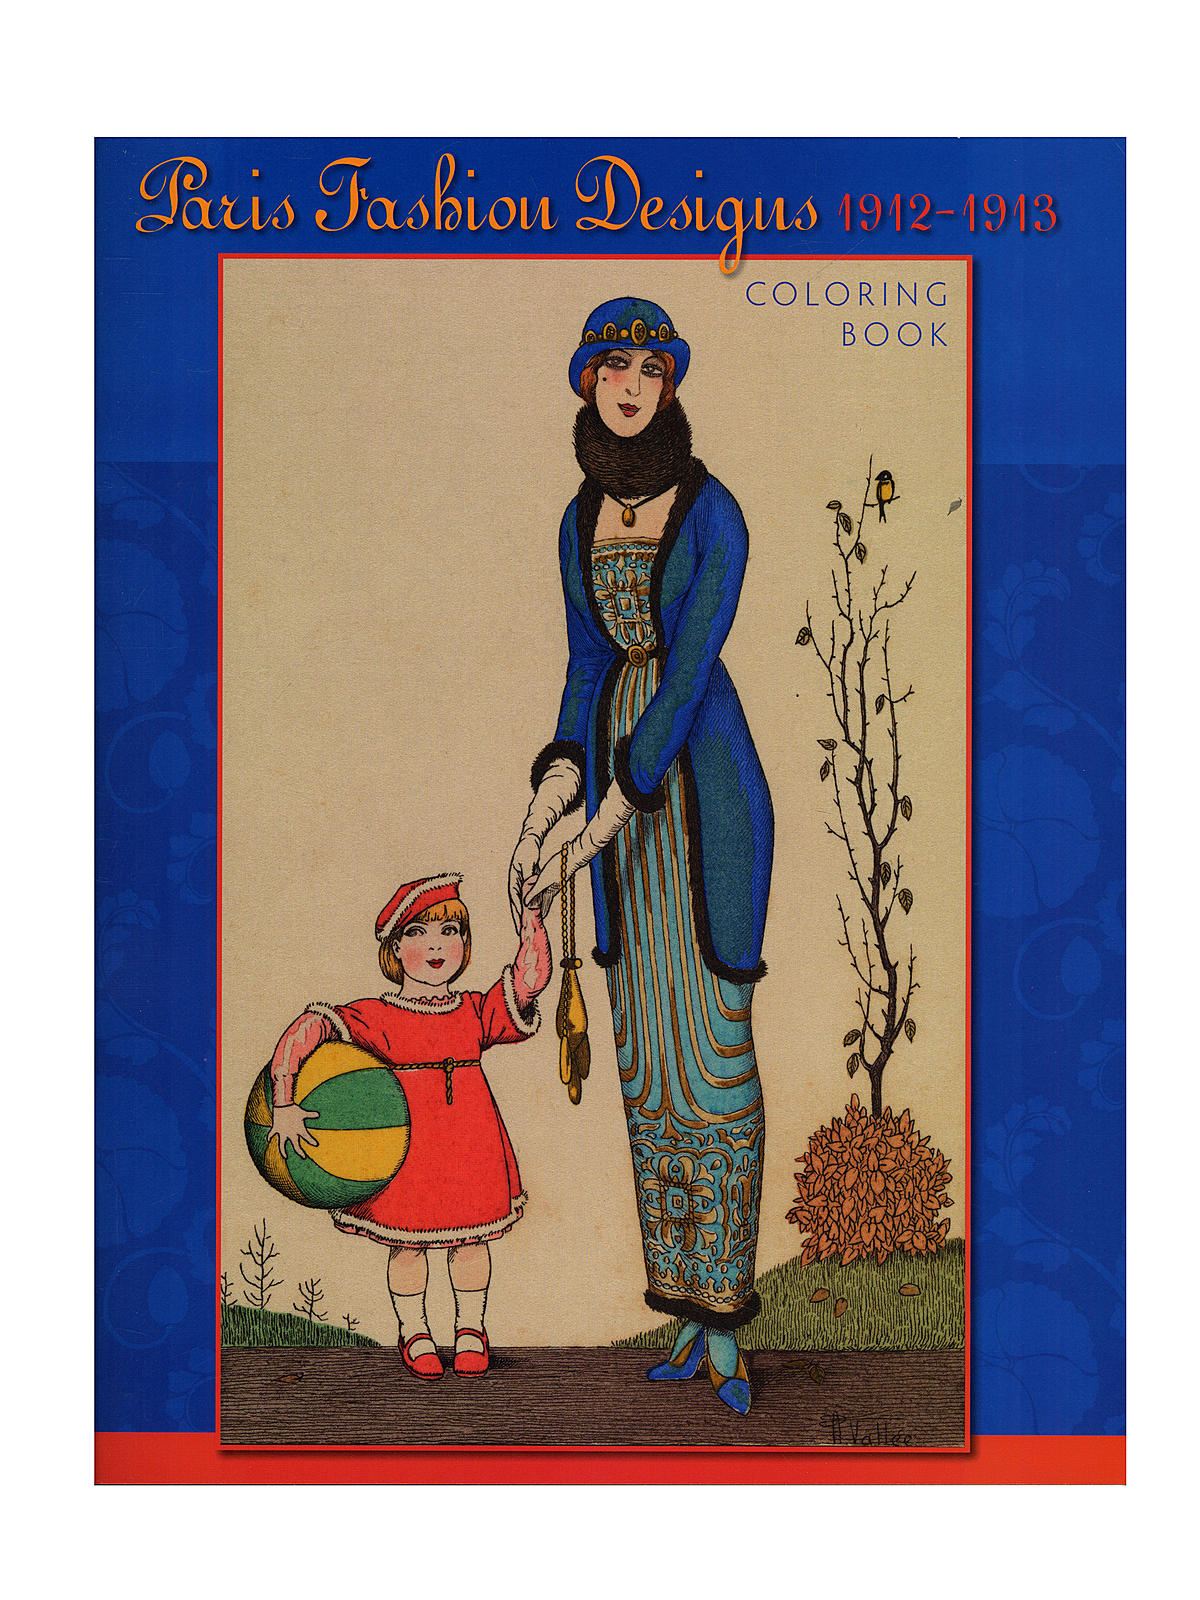 Coloring Books Paris Fashion Designs, 1912-1913